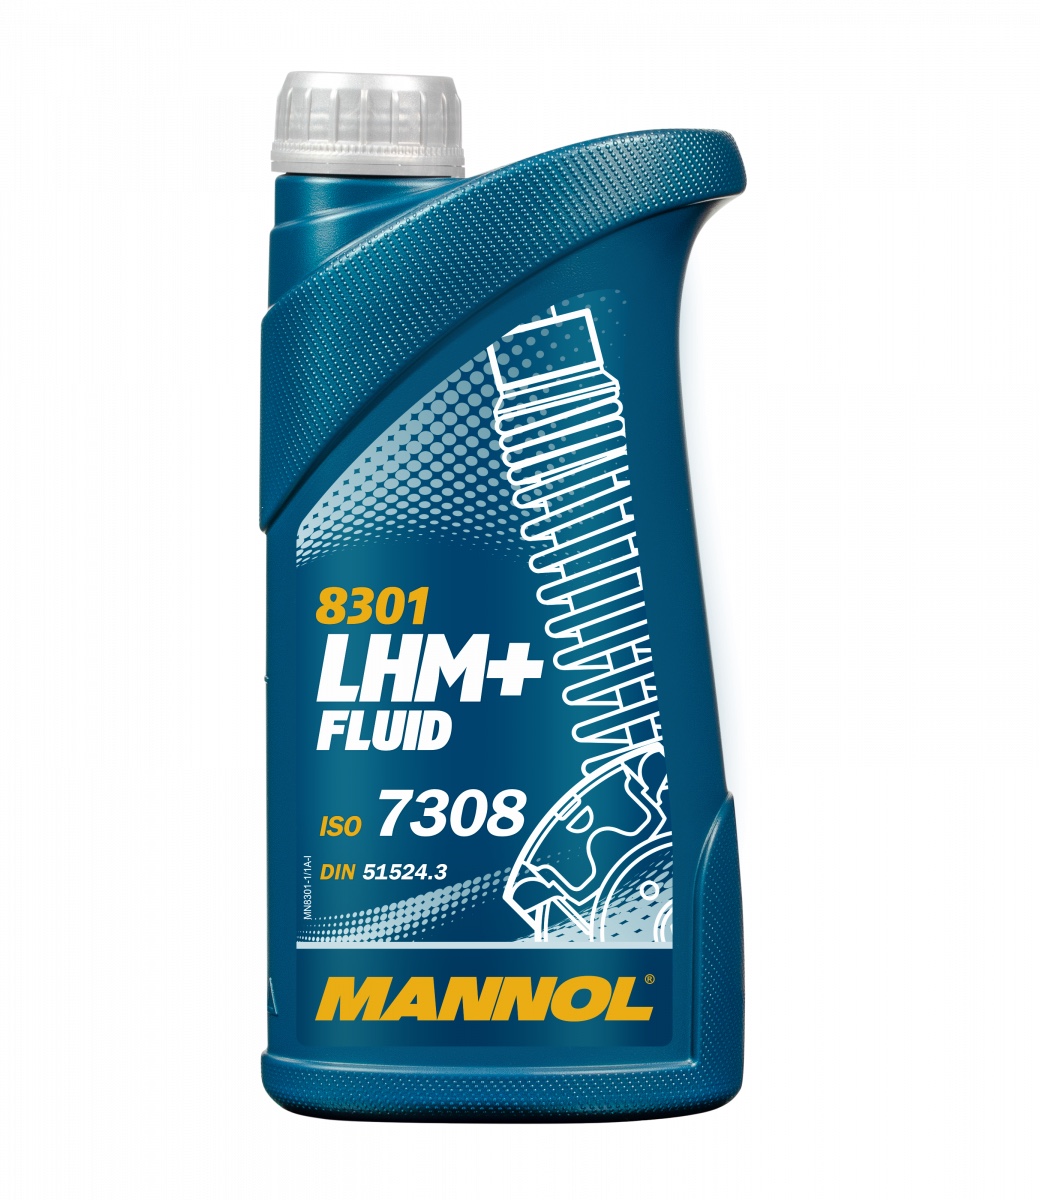 Масло гидравлическое Mannol 8301 LHM+ Fluid 1 л